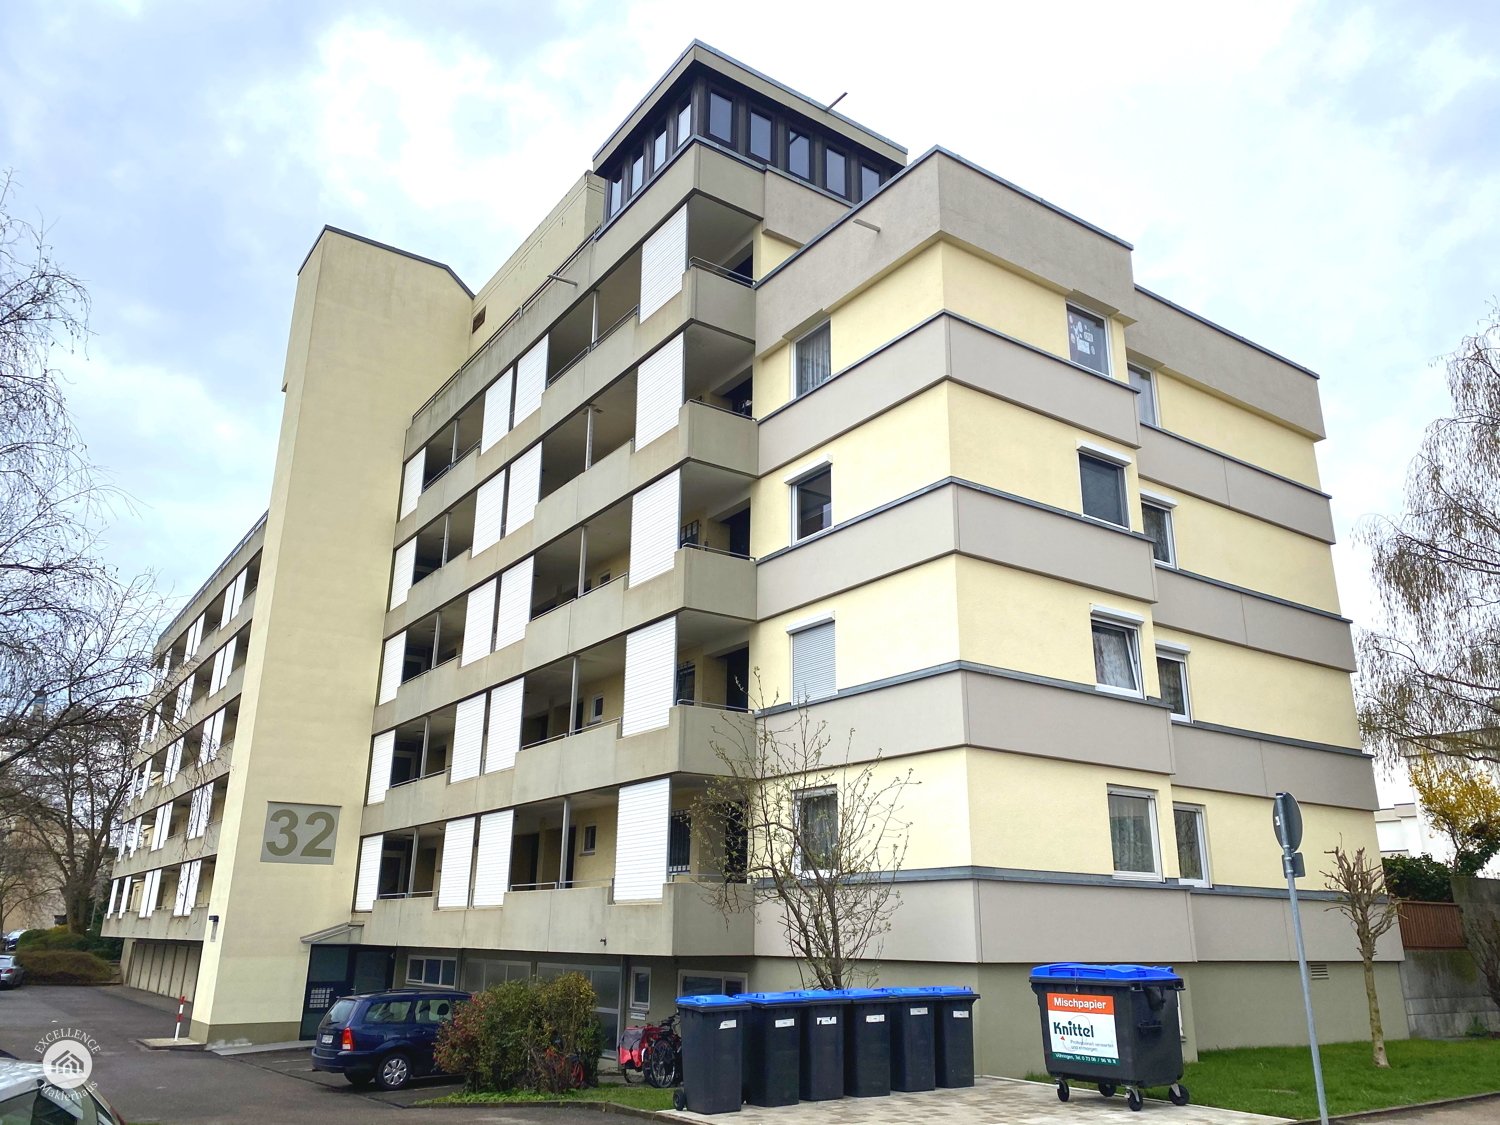 Immobilienangebot - Neu-Ulm - Alle - Einzimmerwohnung in Offenhausen - ideal für Singles oder als Kapitalanlage